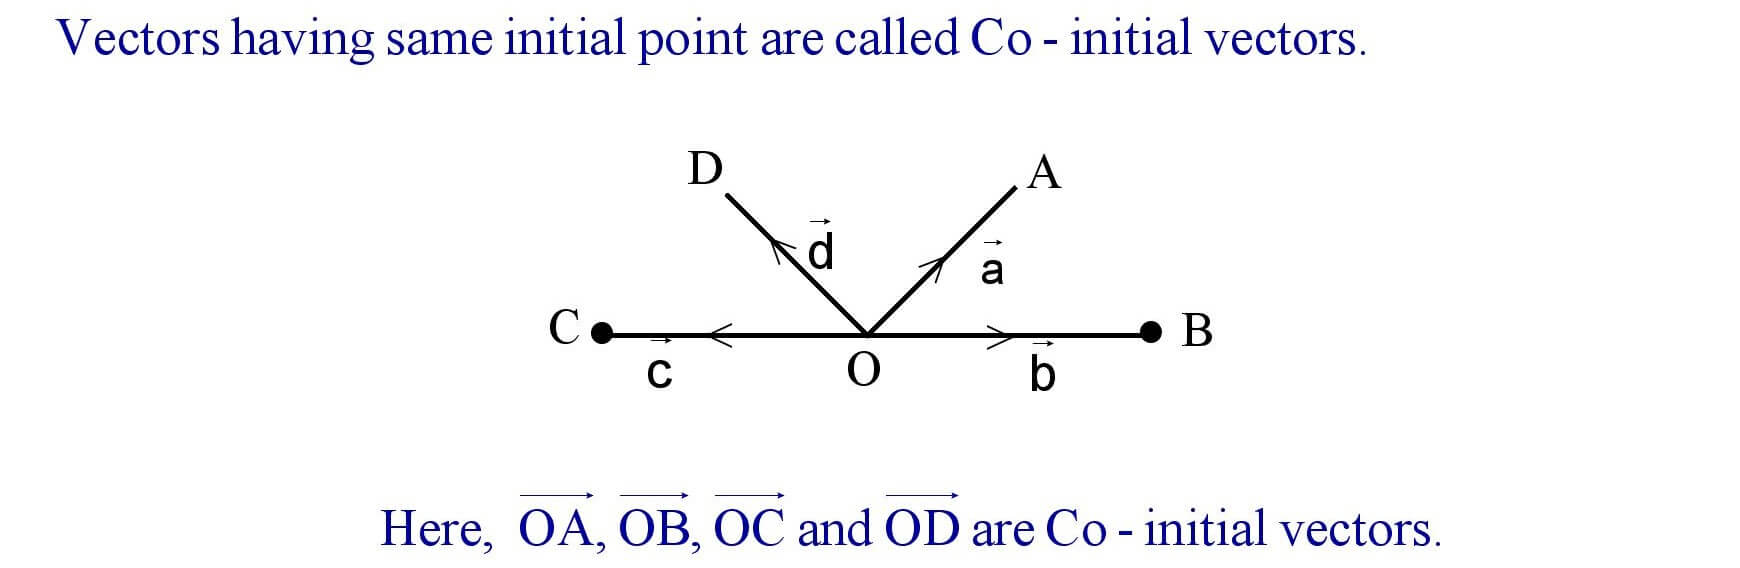 Co - initial vectors